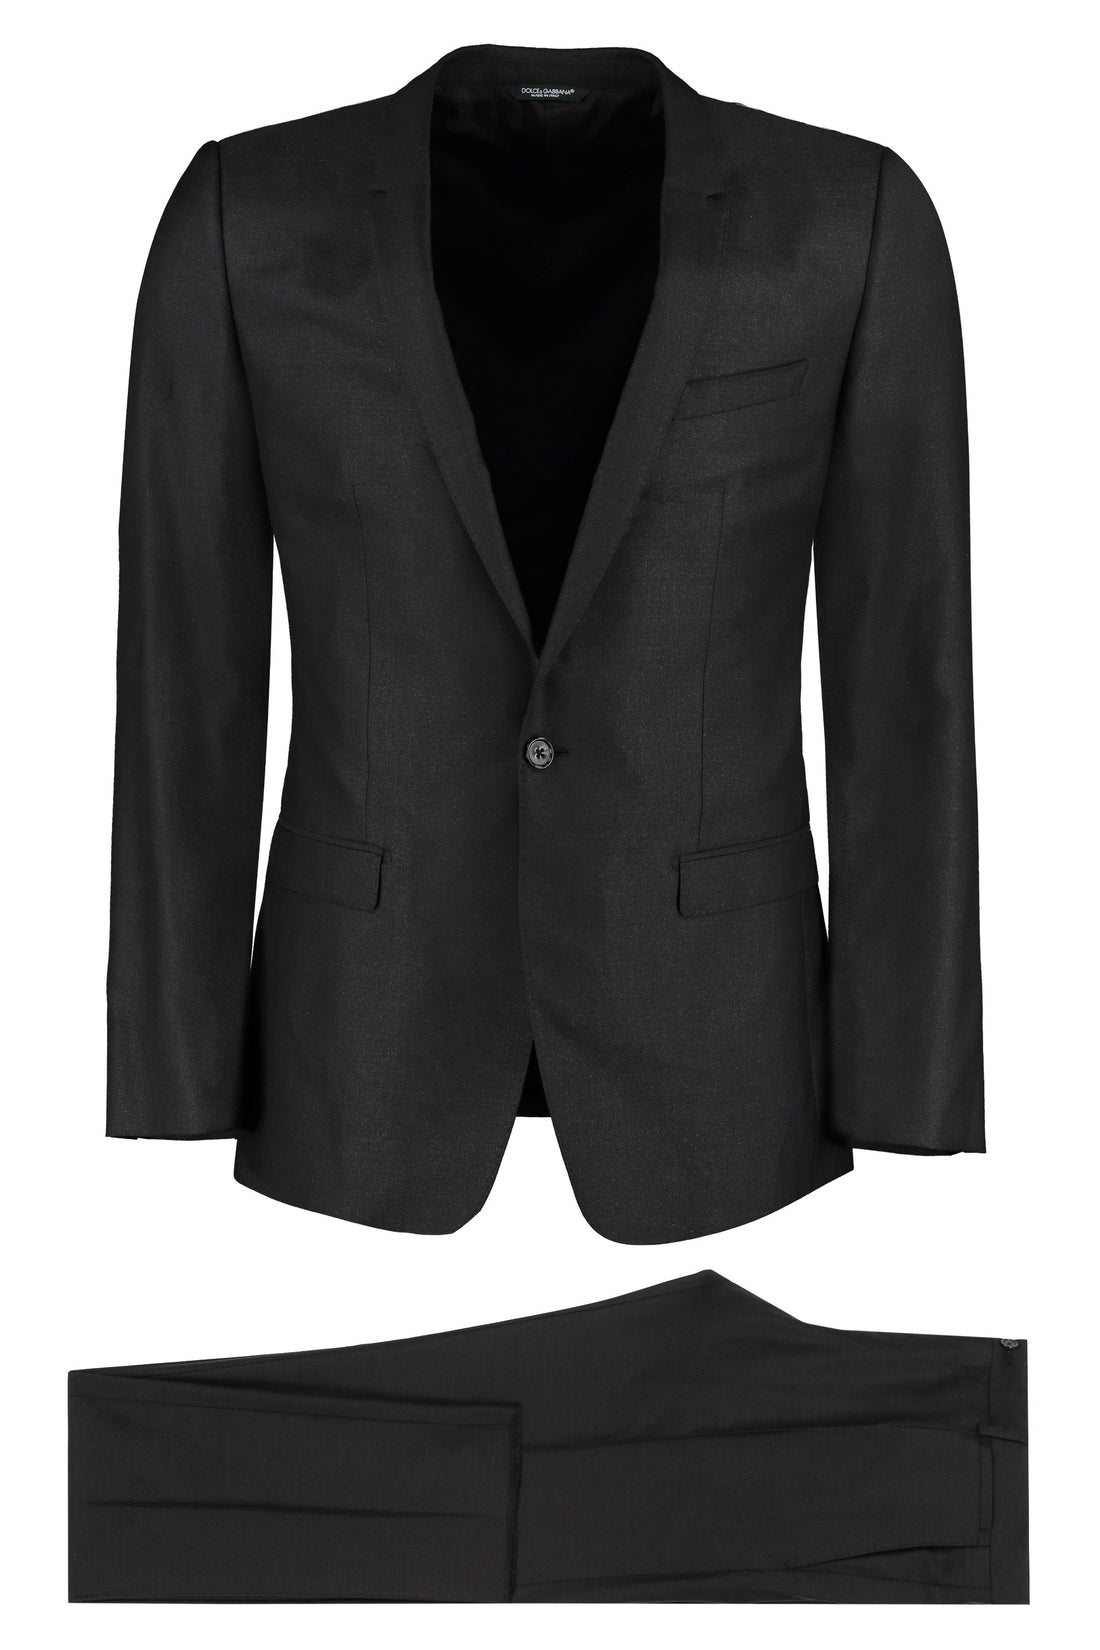 Dolce & Gabbana-OUTLET-SALE-Wool blend two-piece suit-ARCHIVIST